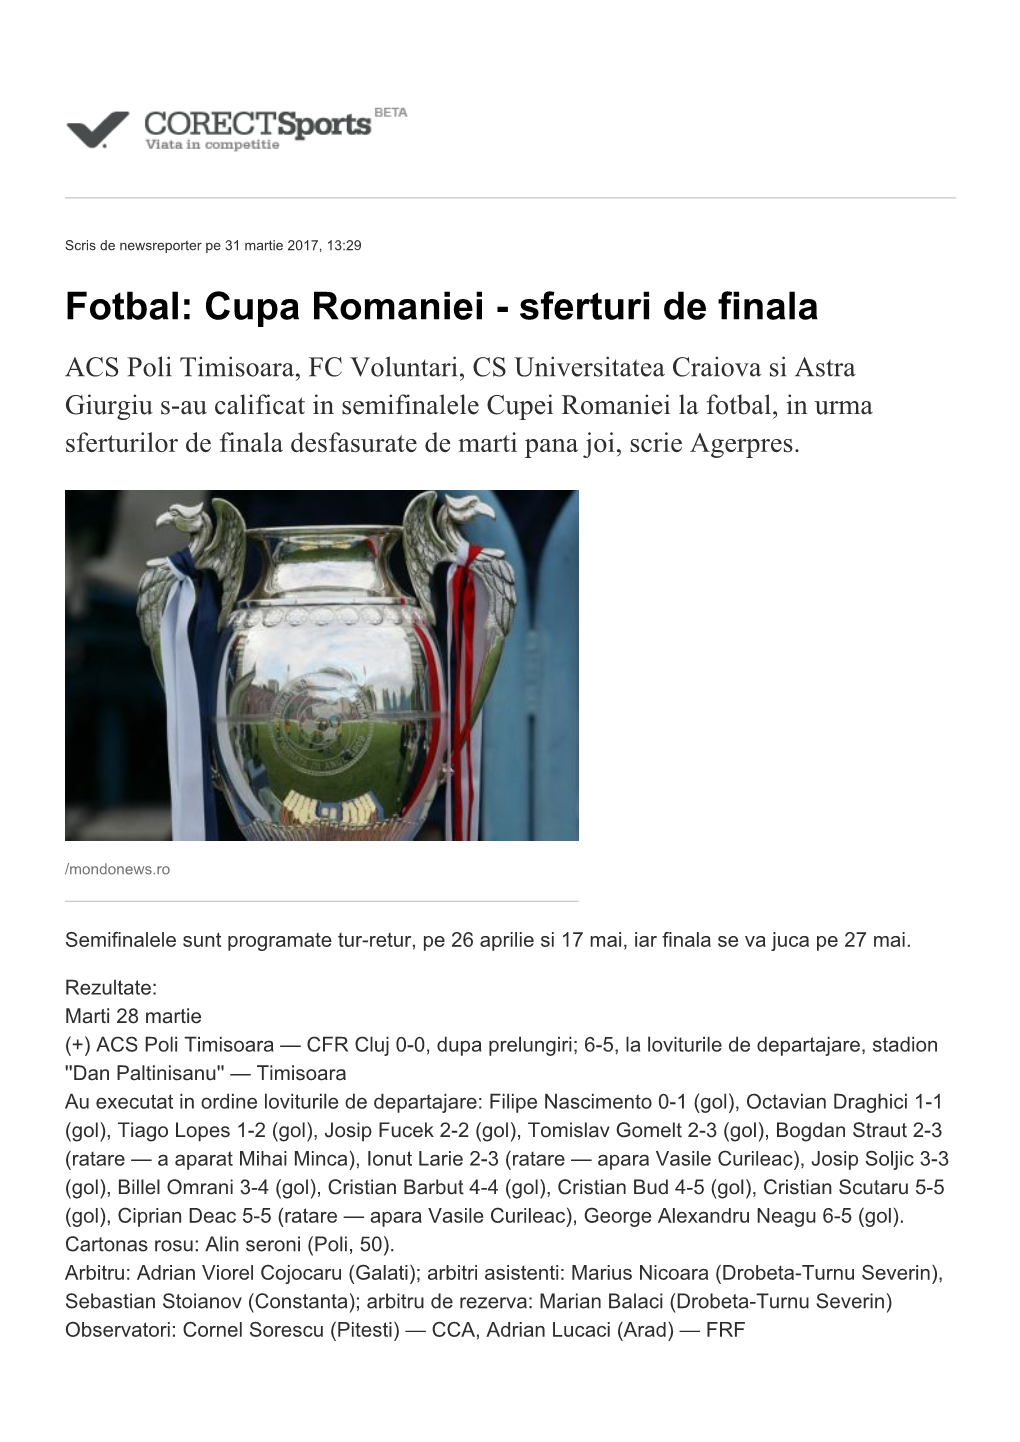 Fotbal: Cupa Romaniei